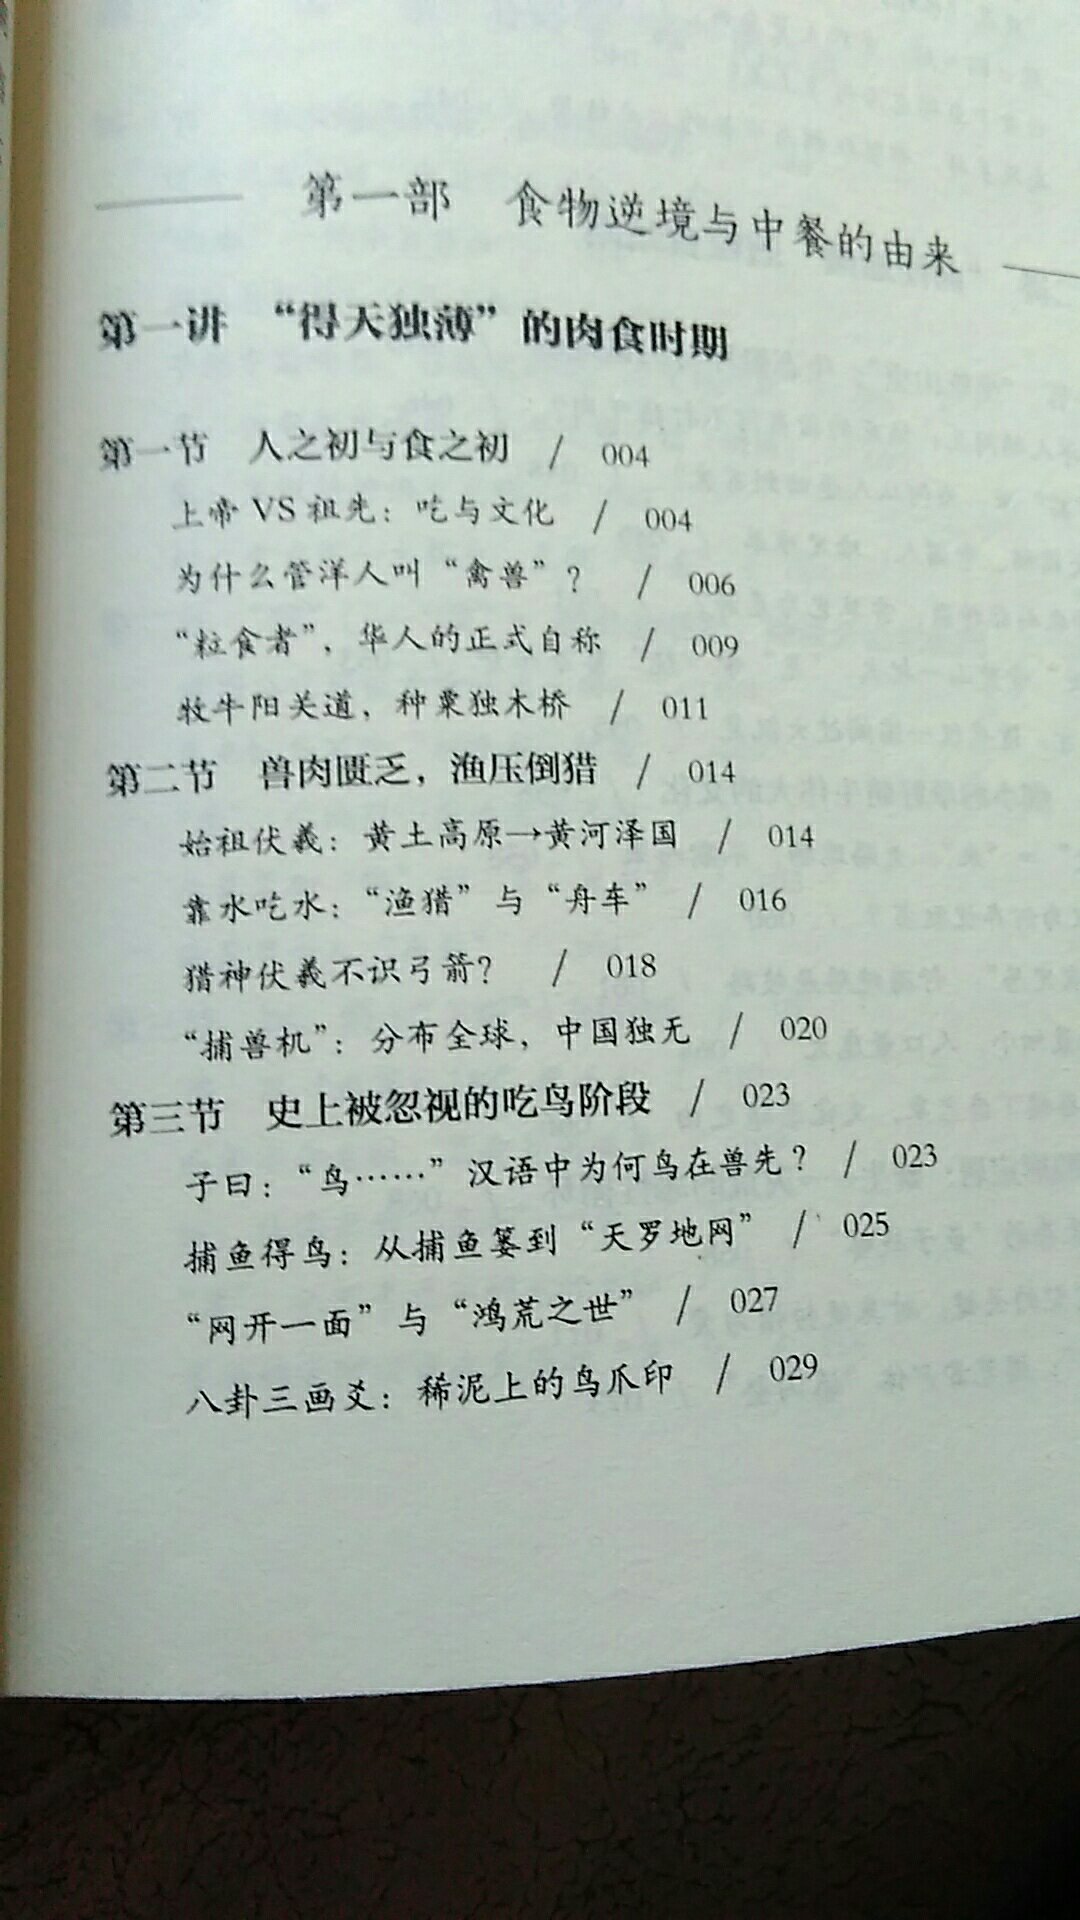 这确实是一本好书，讲中华饮食，更讲中华文化。探究中华饮食之道的高先生，解答了一个个饮食文化疑问。正文茅注释用小字，阅读方便，继承传统。